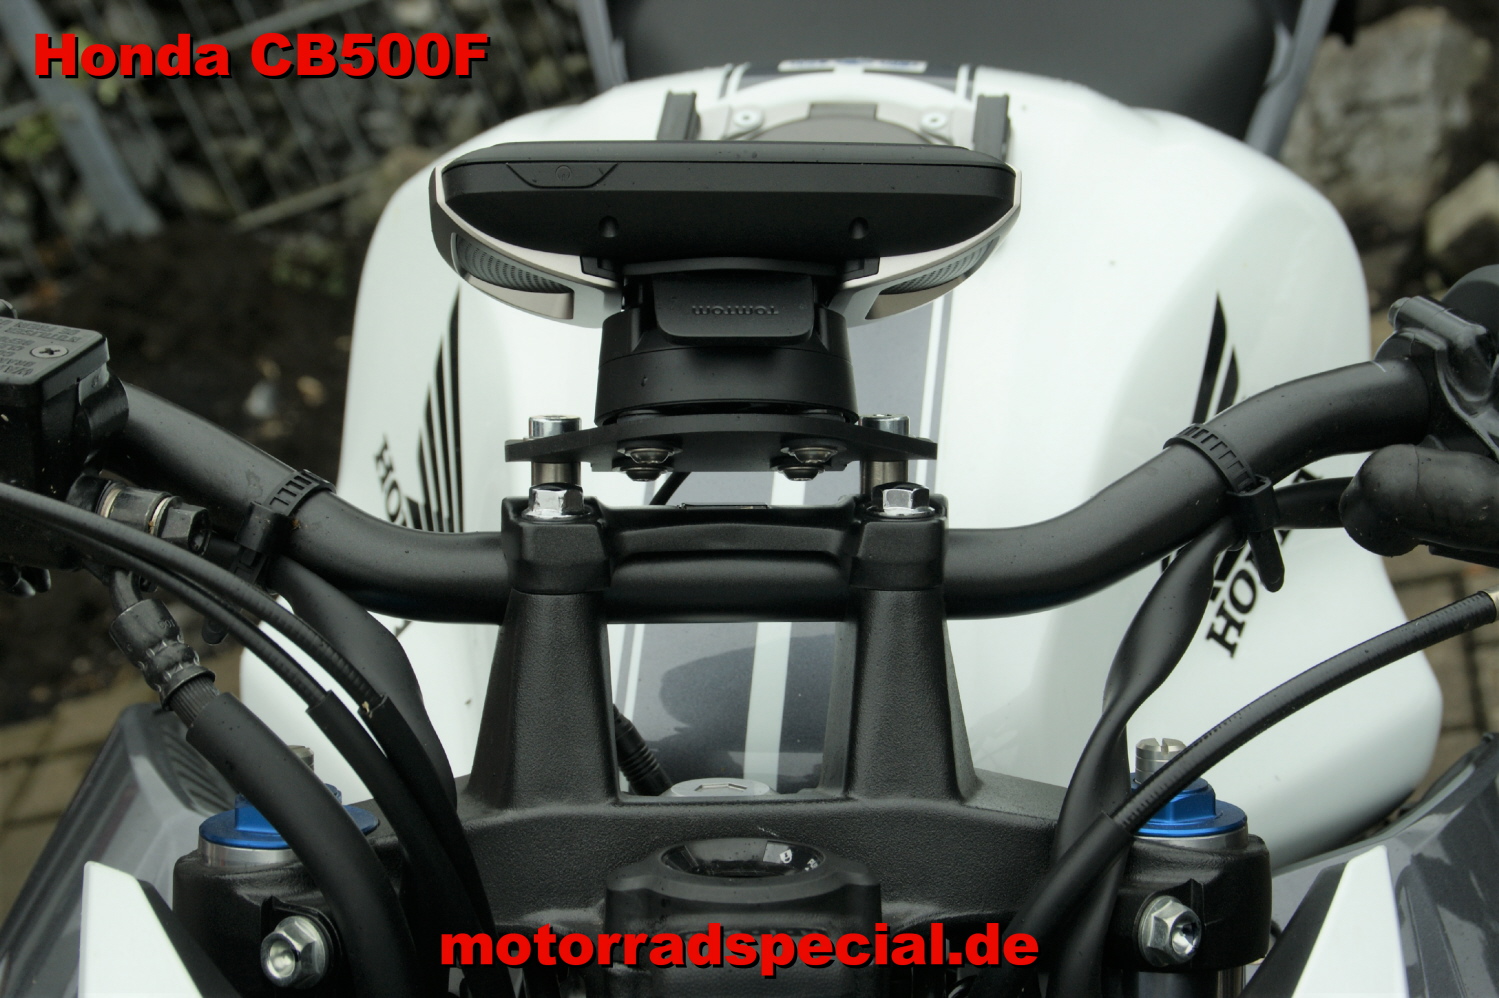 Honda_CB500F_Navigationshalter_Navihalter_TomTom_400_410_motorradspecial.de